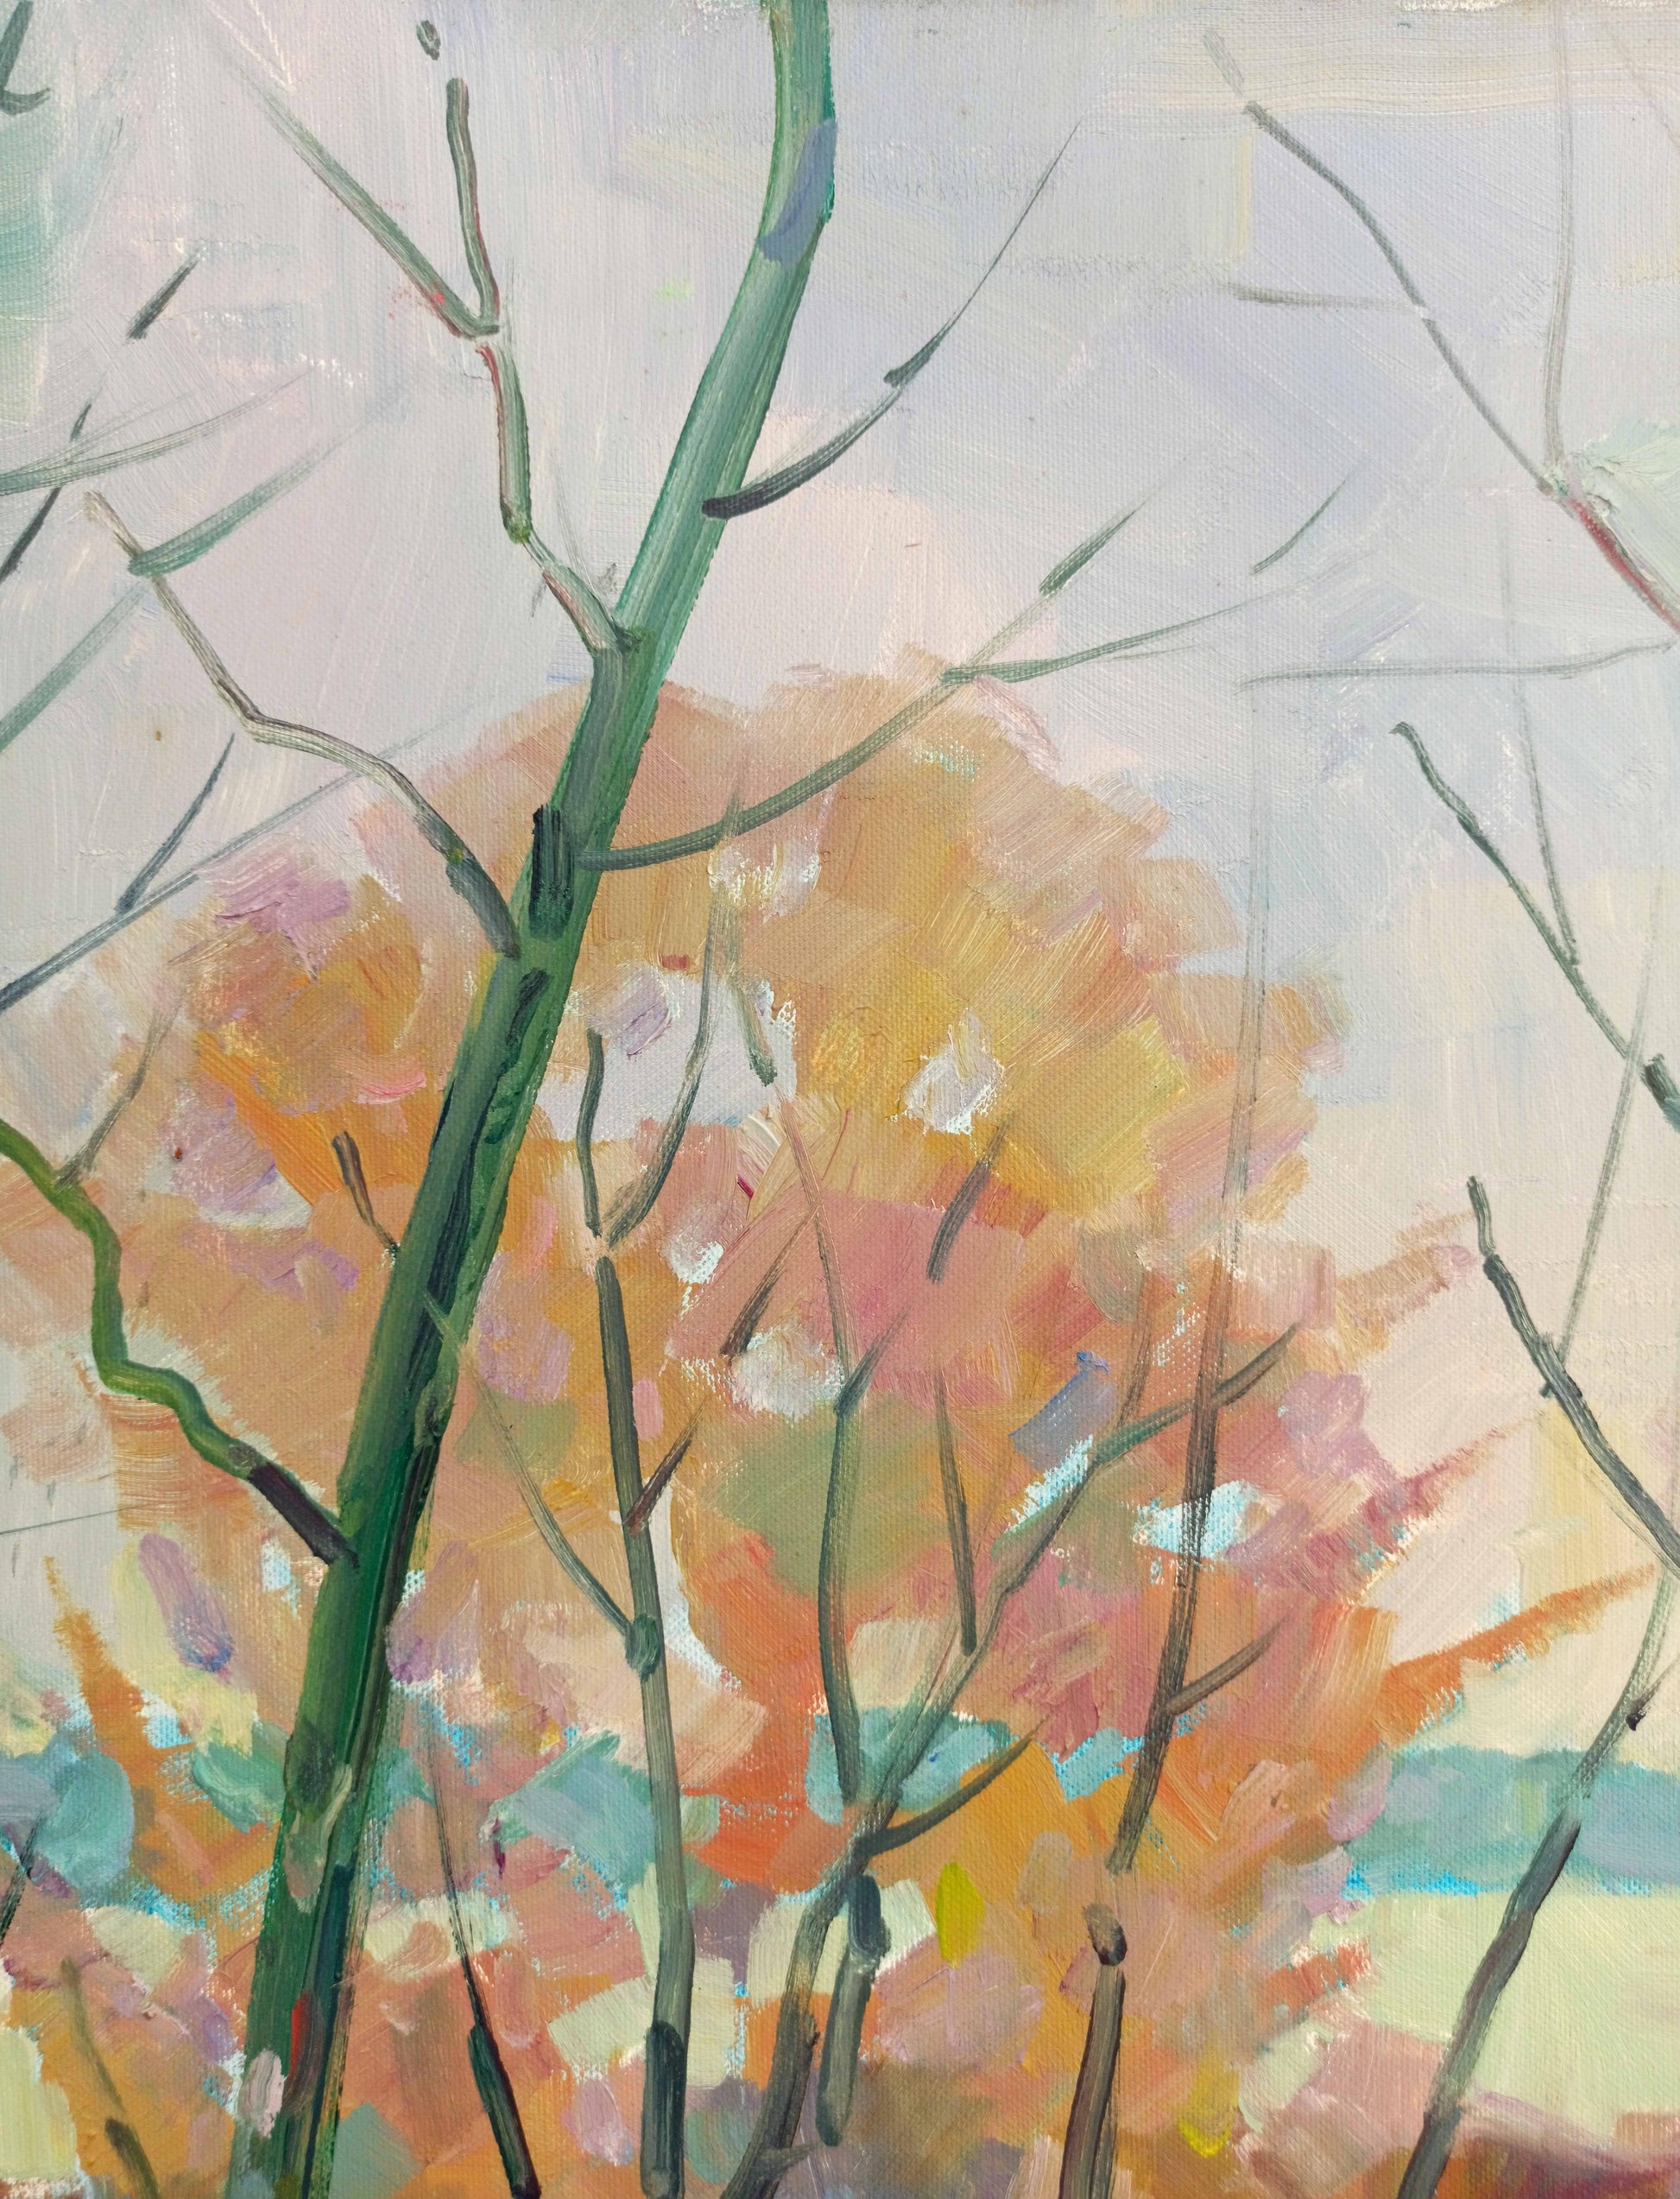 In oil, Peter Dobrev illustrates a springtime scene